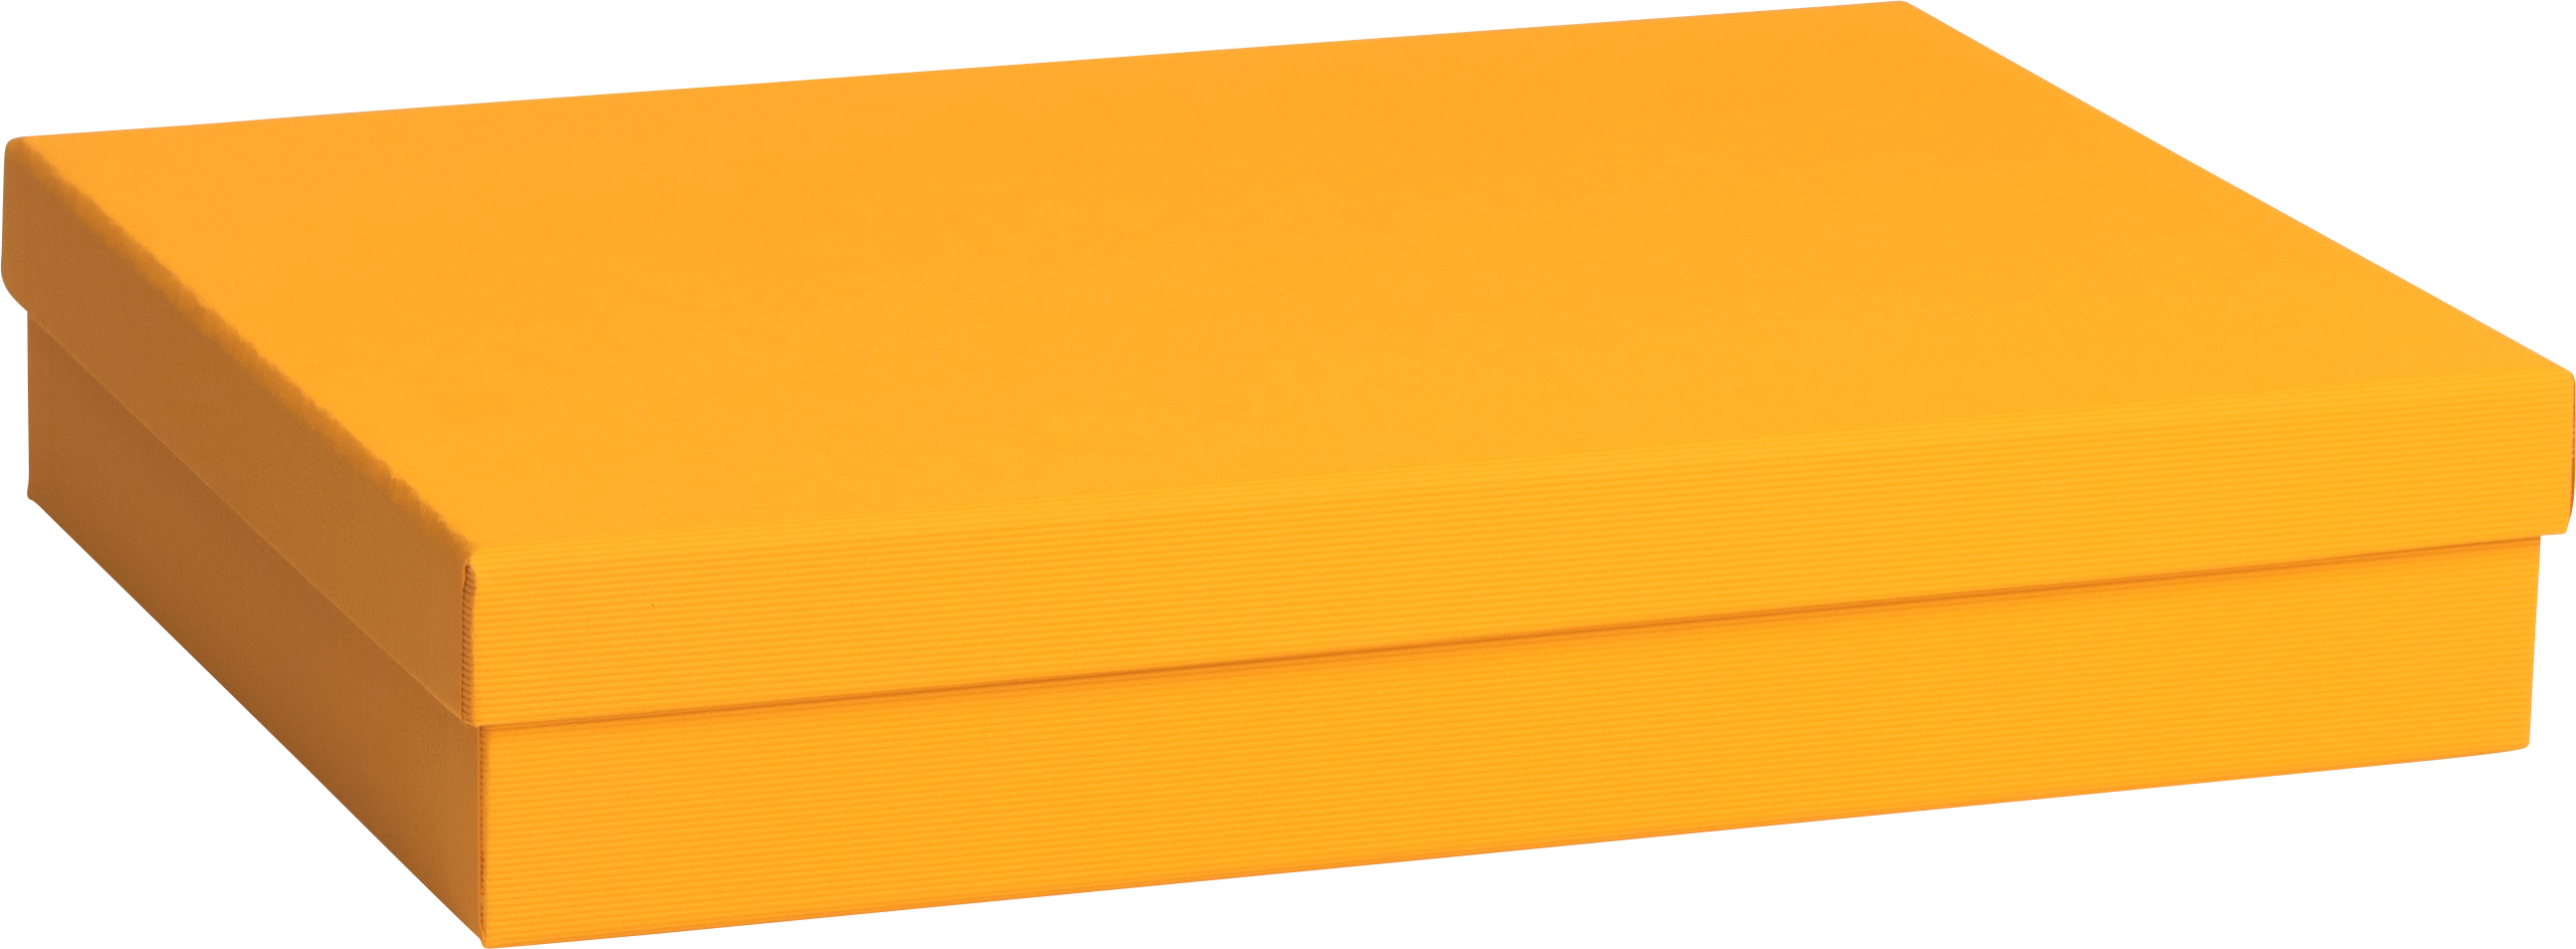 STEWO Boîte cadeau One Colour 2551784593 orange foncé 24x33x6cm